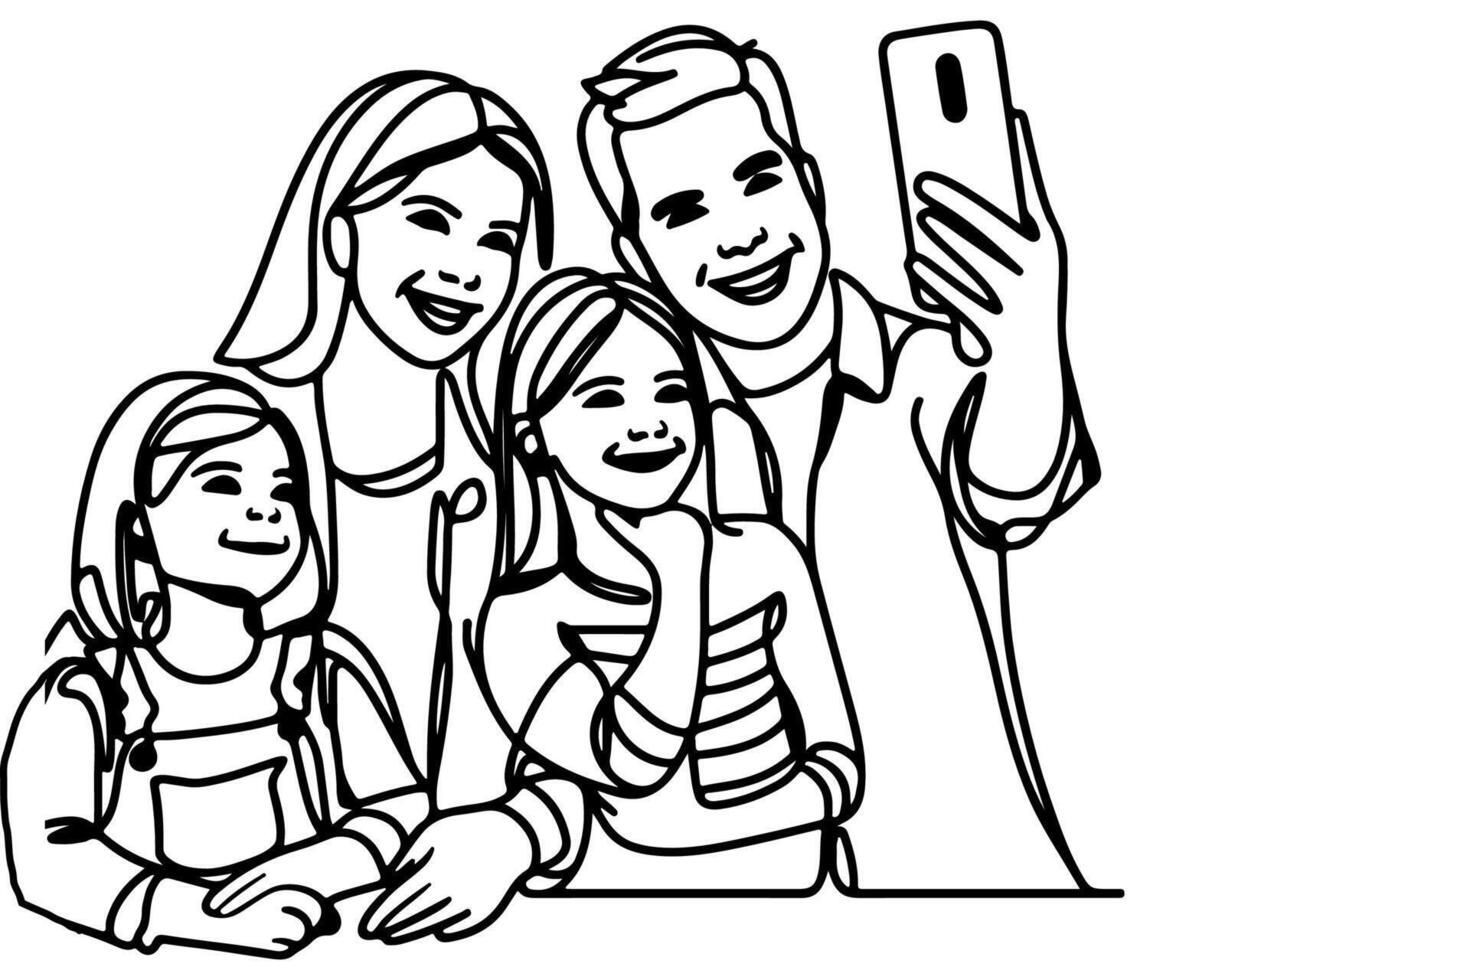 continu un noir ligne art dessin de bonne humeur famille prise agissant selfie ou vidéo appel par mobile téléphone contour griffonnage vecteur famille Voyage concept